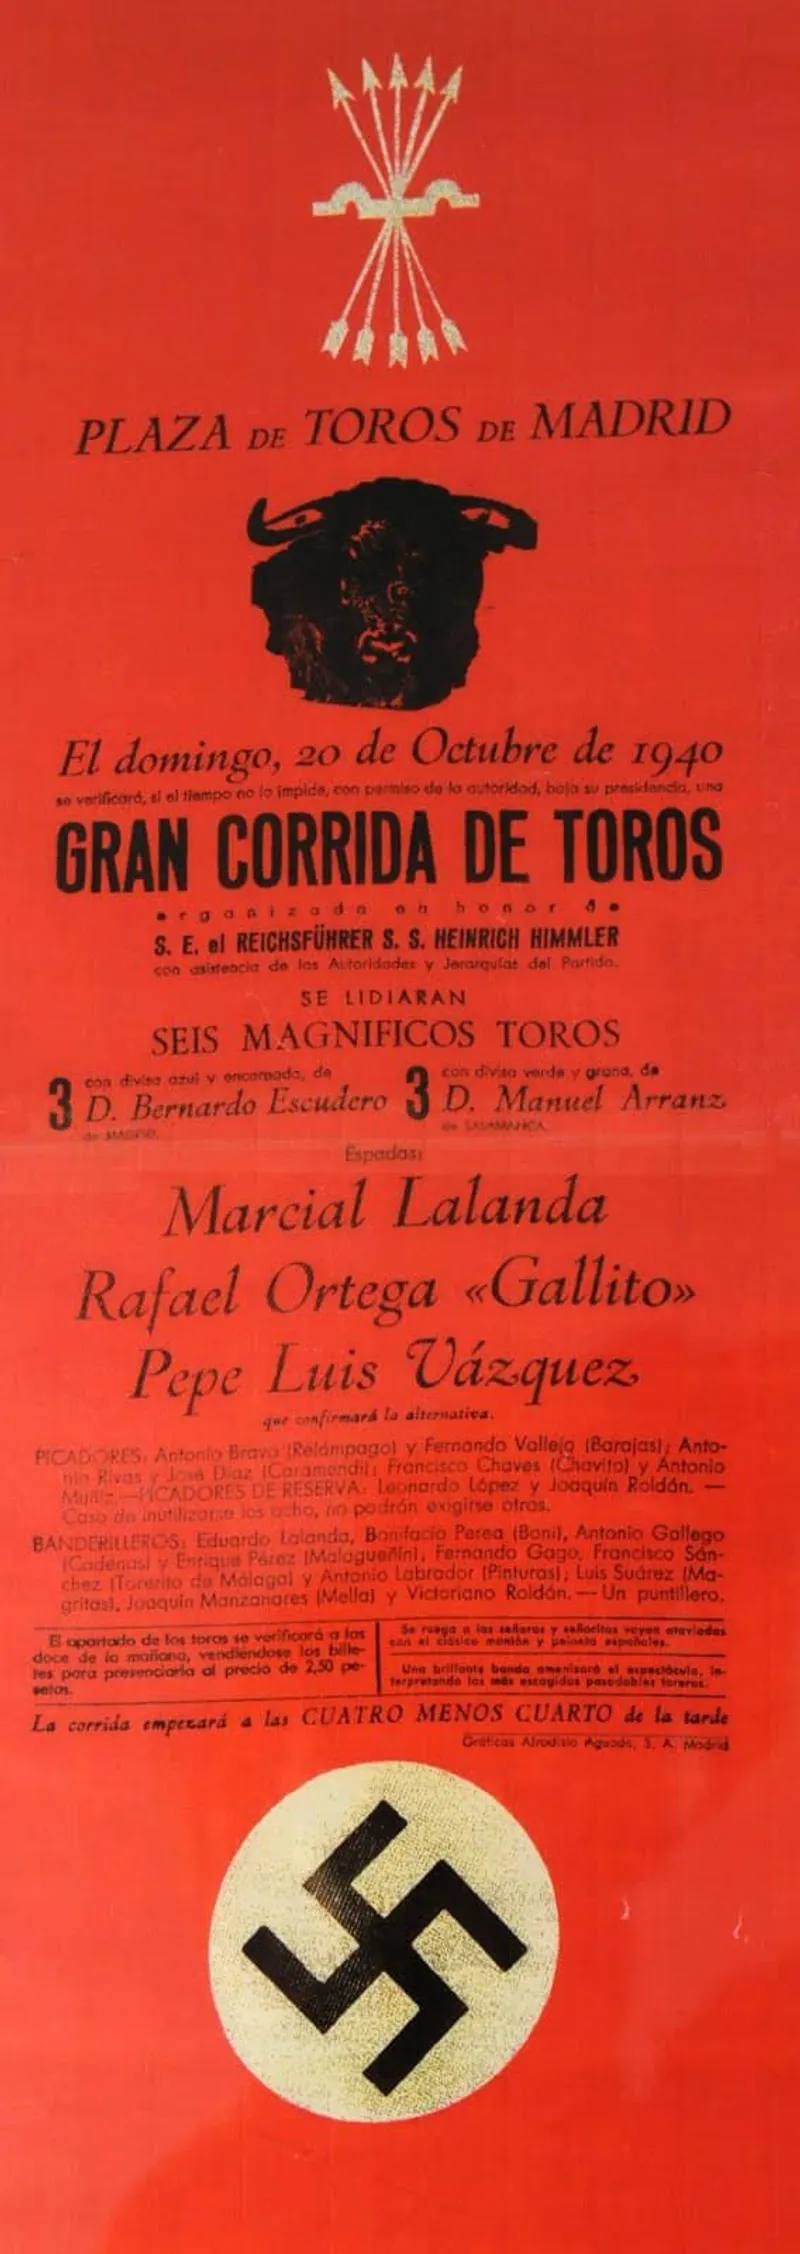 Gran Corrida de toros, Madrid, 1940